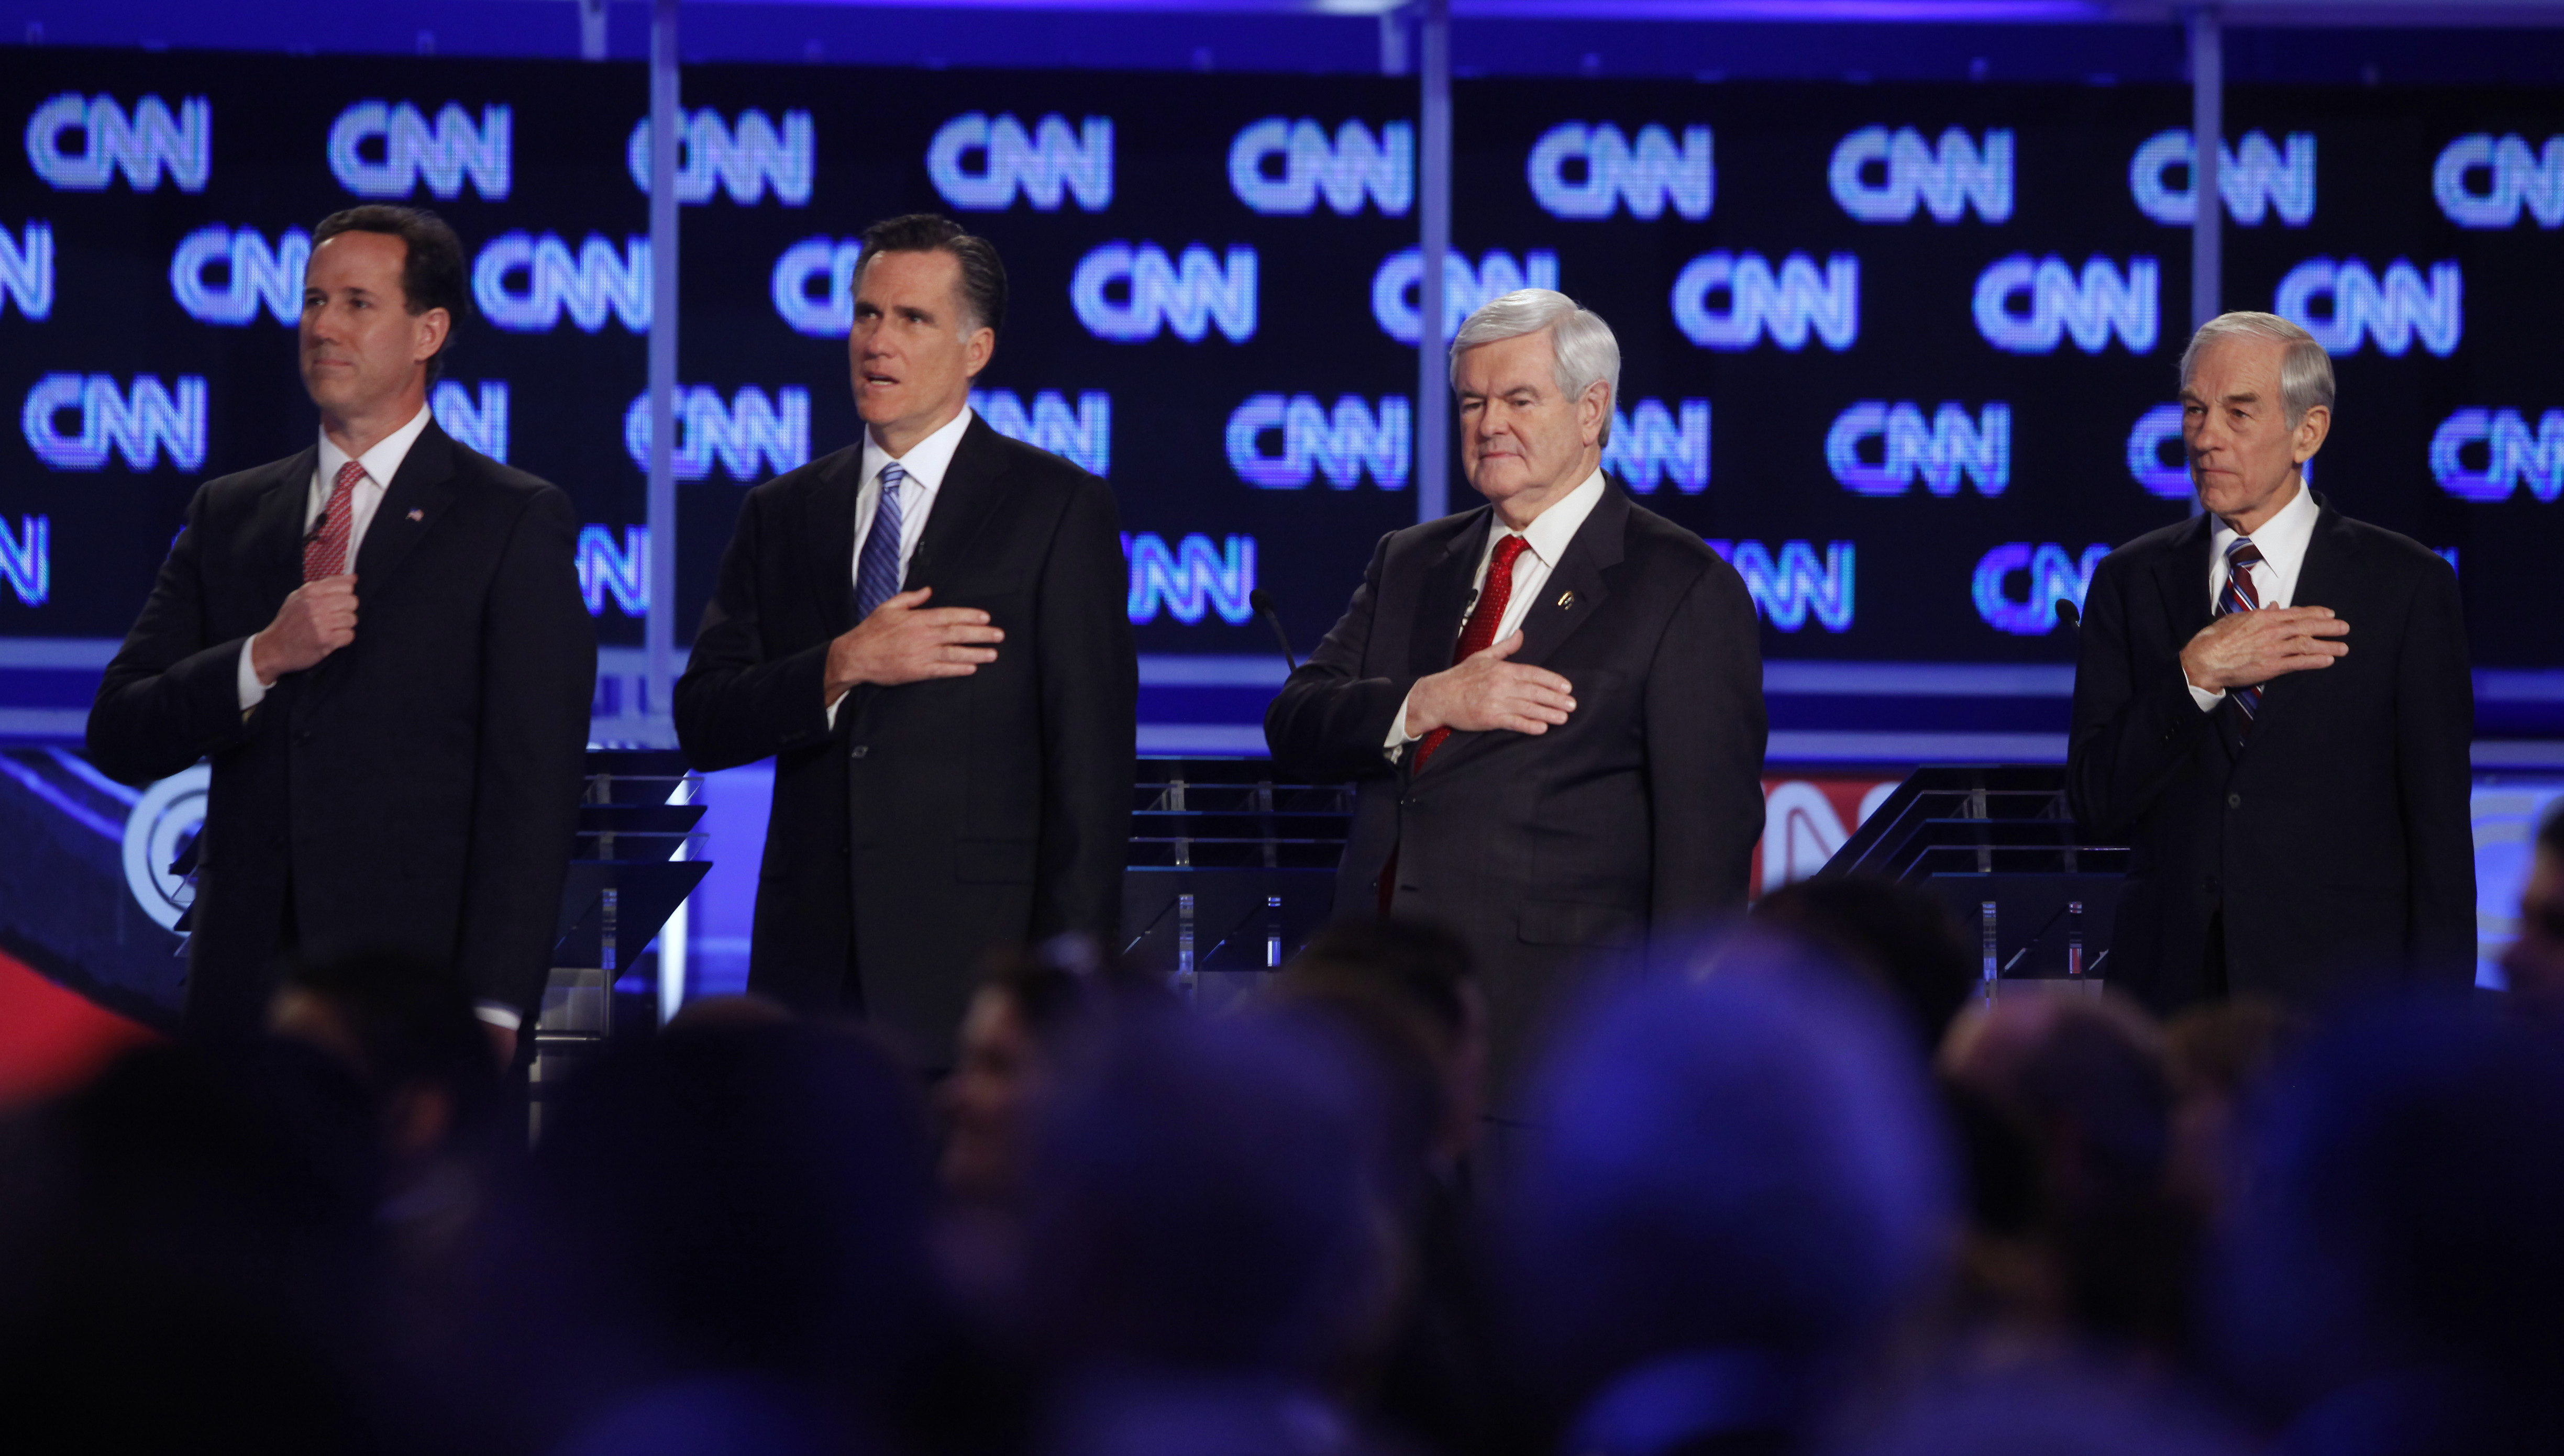 Politik, Debatt, Rick Santorum, Otrohet, Newt Gingrich, Republikanerna, Barack Obama, Mitt Romney, Presidentvalet, USA